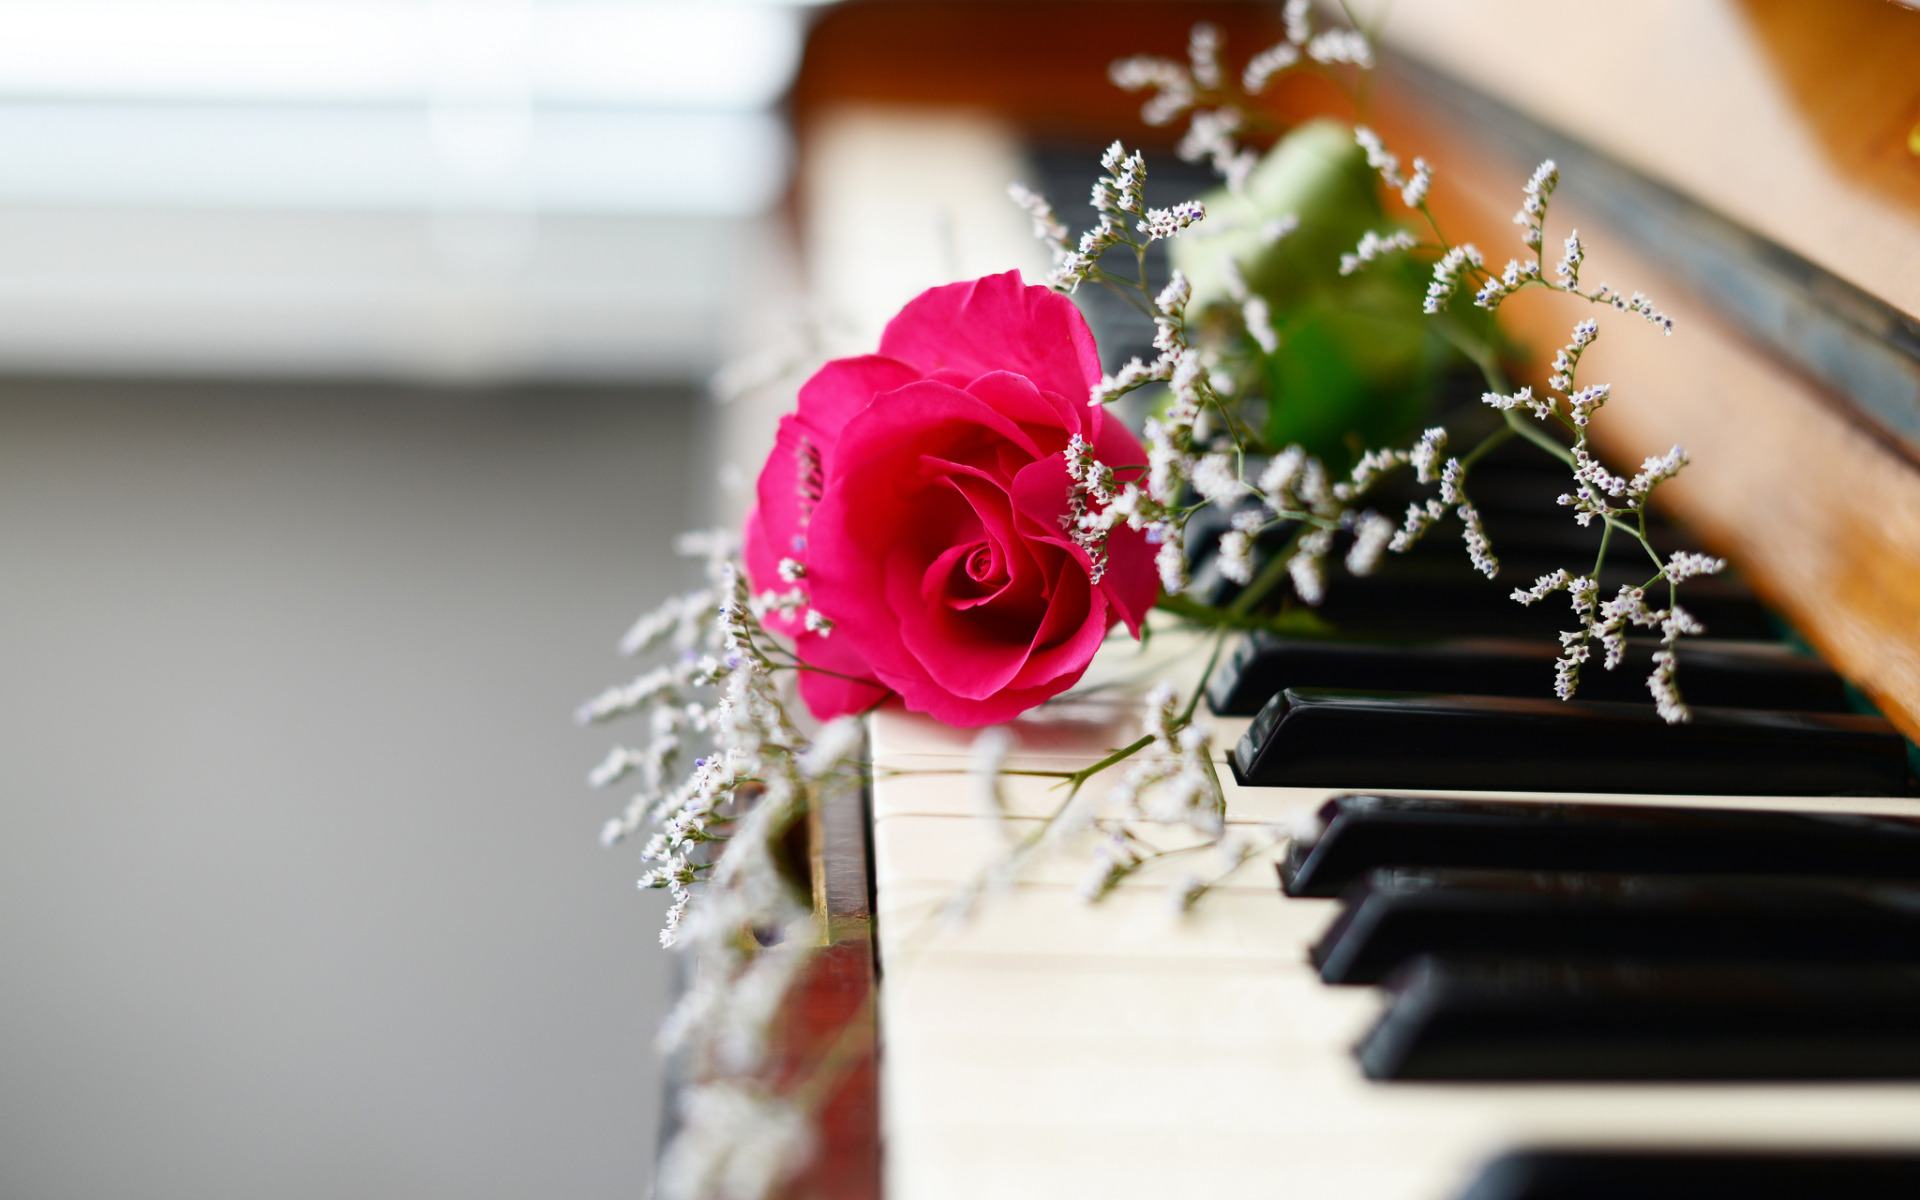 Красивая музыка россии. Музыкальный букет цветов. Картинки пианино и цветы. Цветы на рояле. Музыкальные инструменты и цветы.